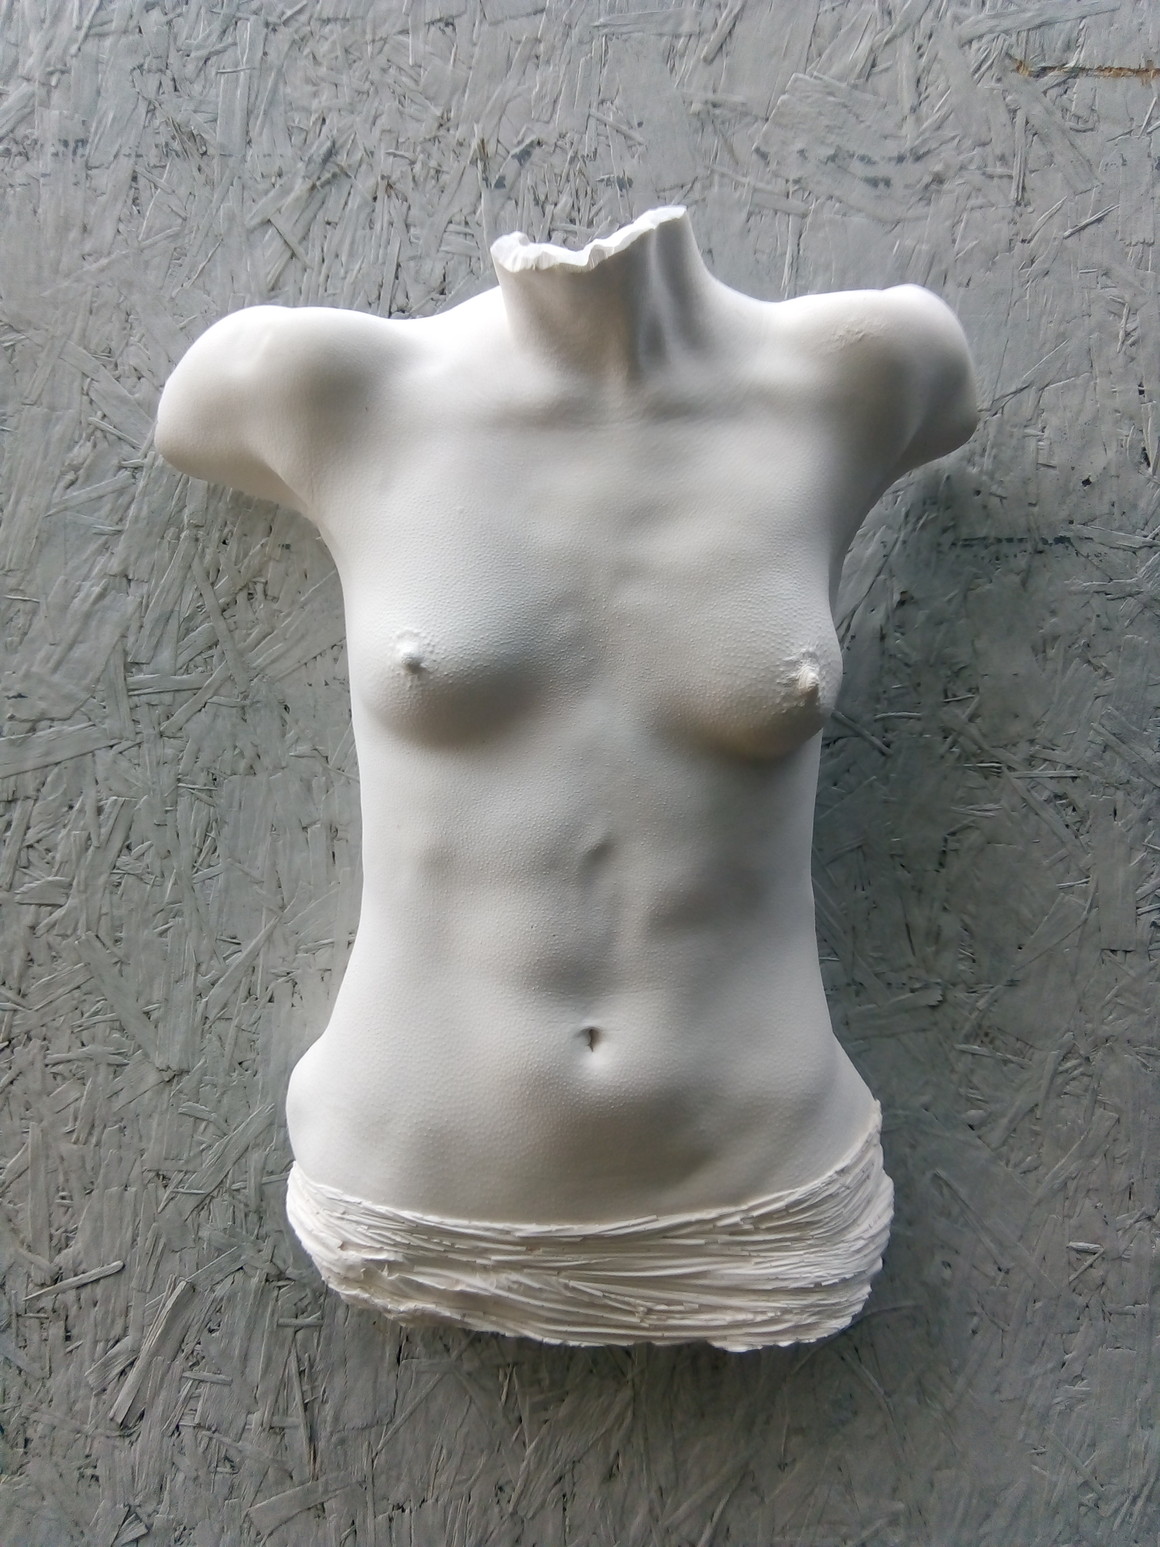 nude art sculpture